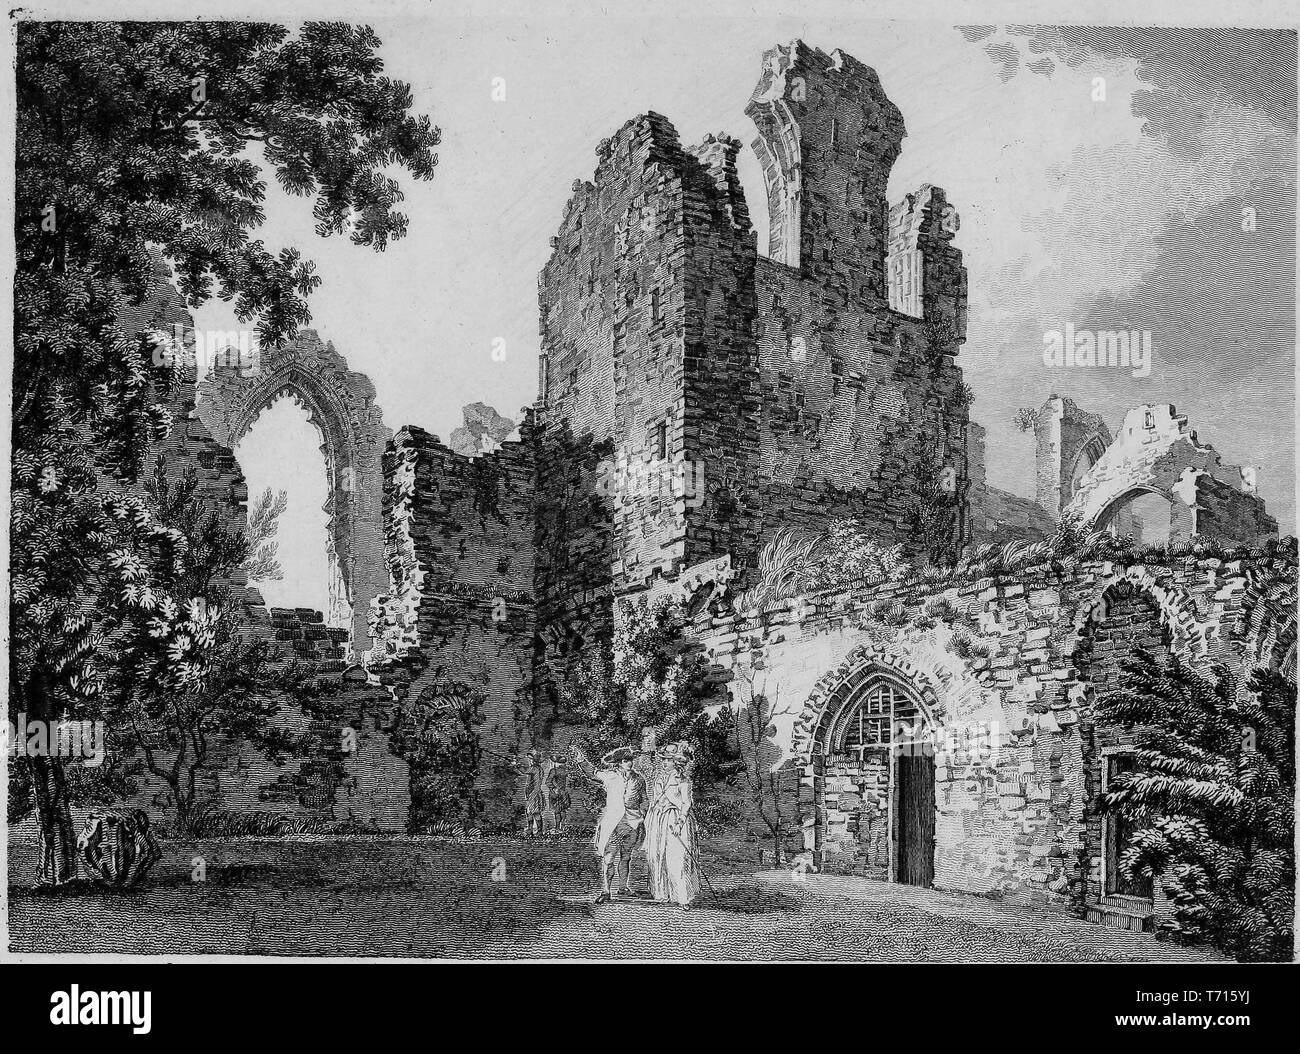 Incisione di rovine di abbazia a Leiston nel Suffolk, Inghilterra, dal libro "Antichità di Gran Bretagna' da William Byrne e Thomas Hearne, 1825. La cortesia Internet Archive. () Foto Stock